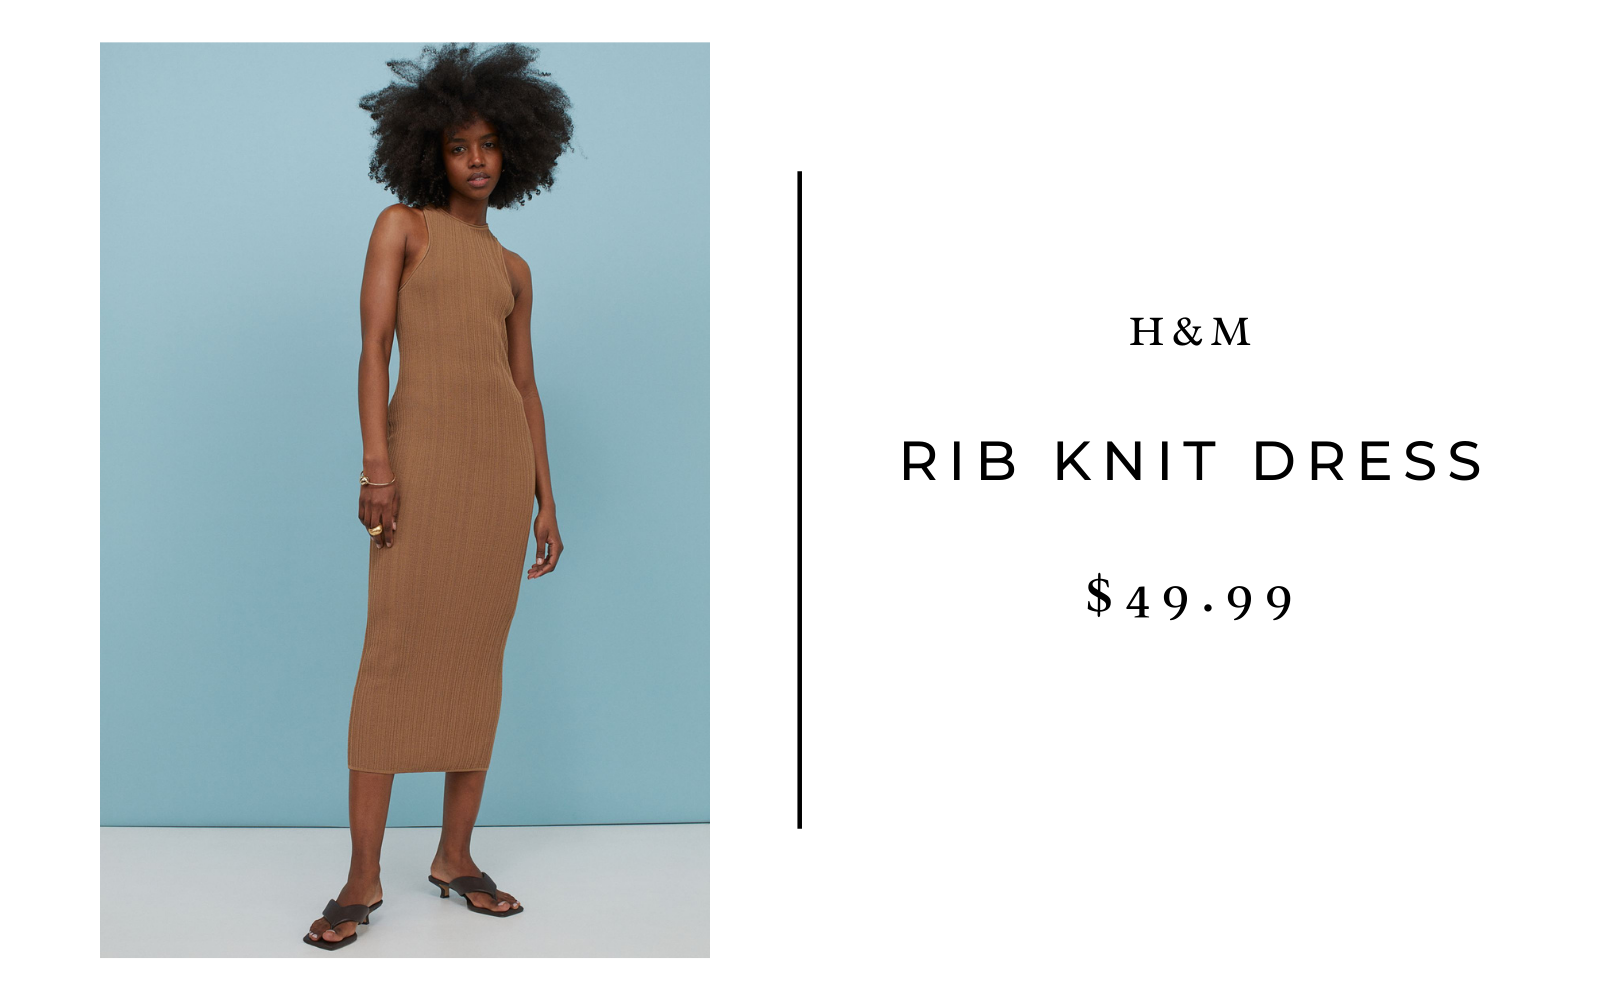 H&M Rib Knit Dress